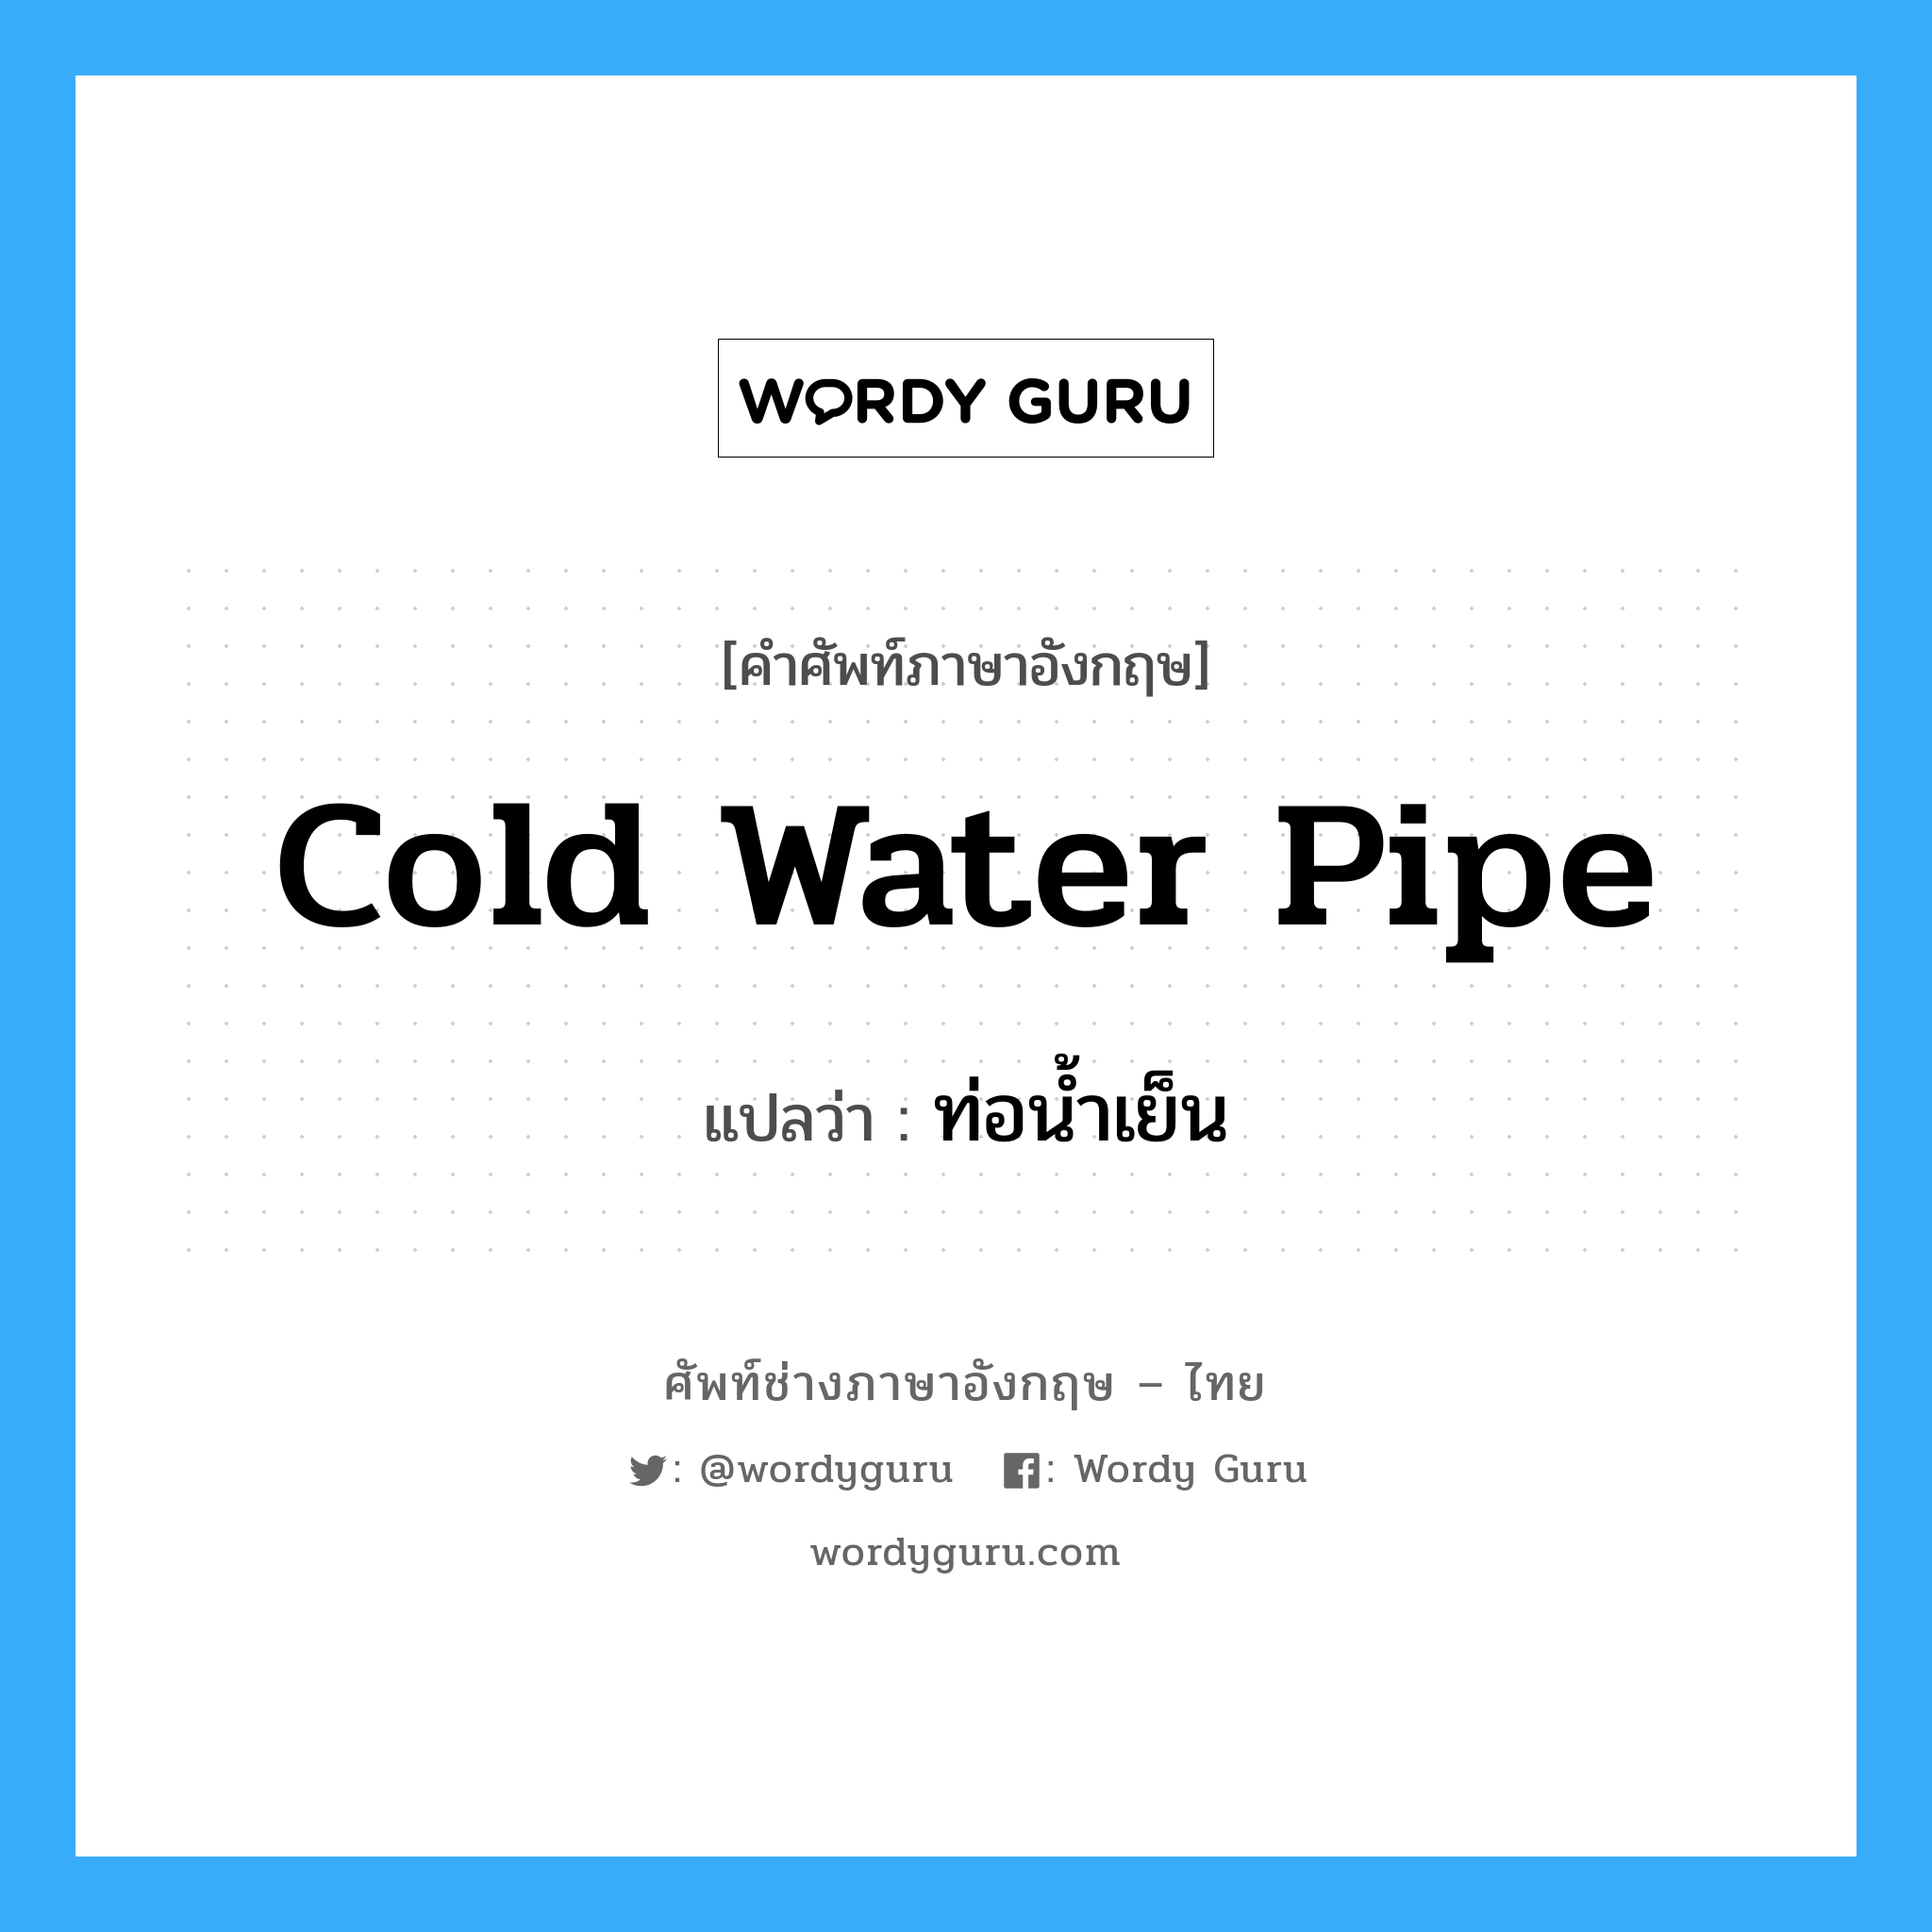 ท่อน้ำเย็น ภาษาอังกฤษ?, คำศัพท์ช่างภาษาอังกฤษ - ไทย ท่อน้ำเย็น คำศัพท์ภาษาอังกฤษ ท่อน้ำเย็น แปลว่า cold water pipe